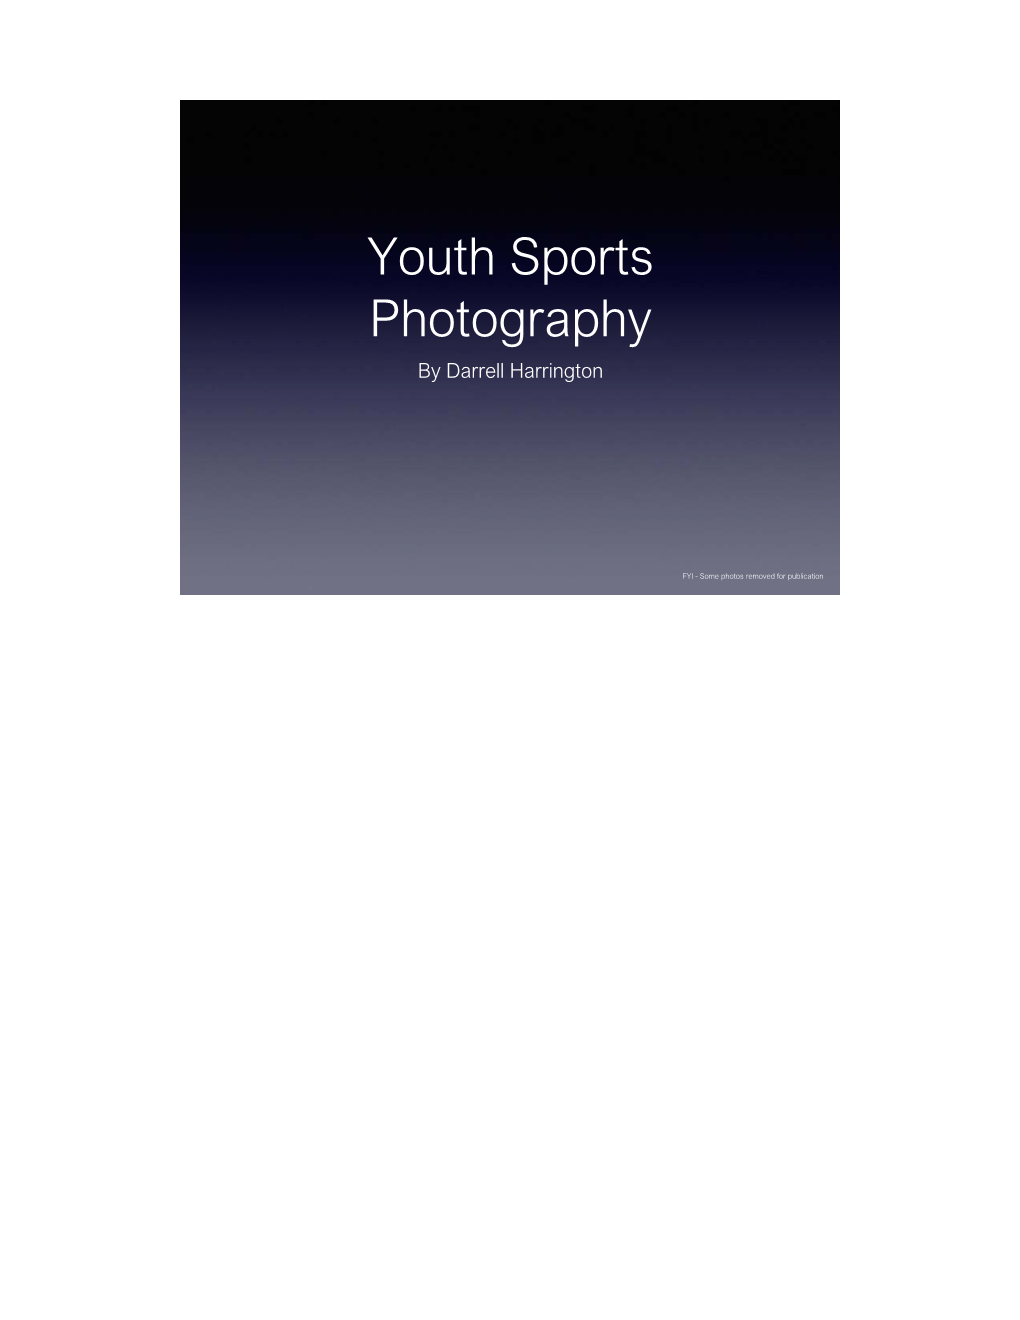 Youth Sports Photography by Darrell Harrington